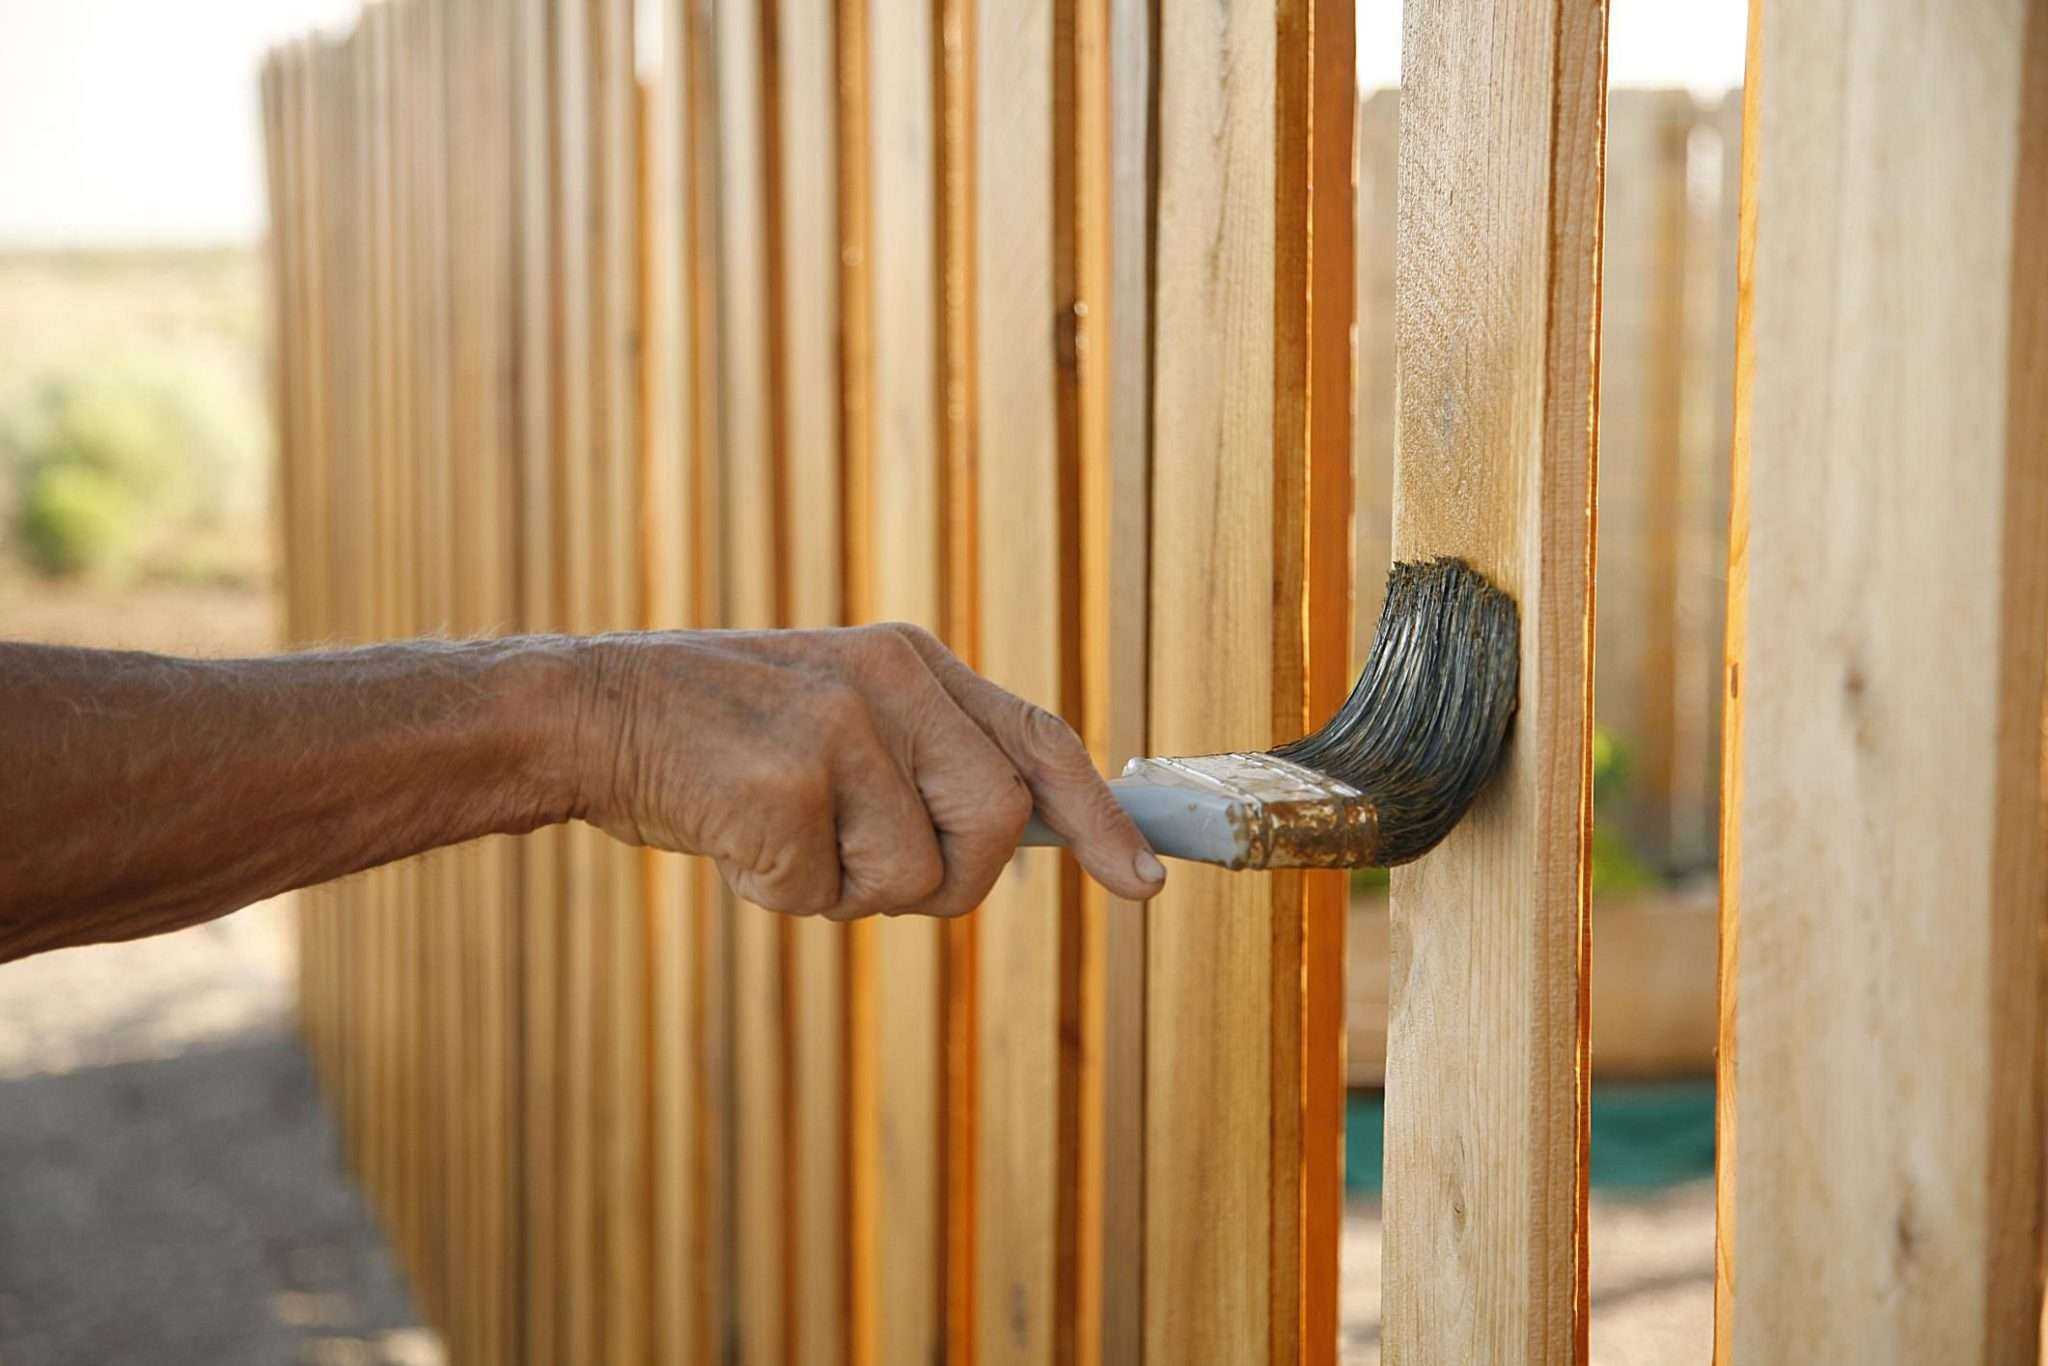 Обработанный деревянный забор будет служить долго и качественно Можно воспользоваться как народными средствами, так и заводскими веществами